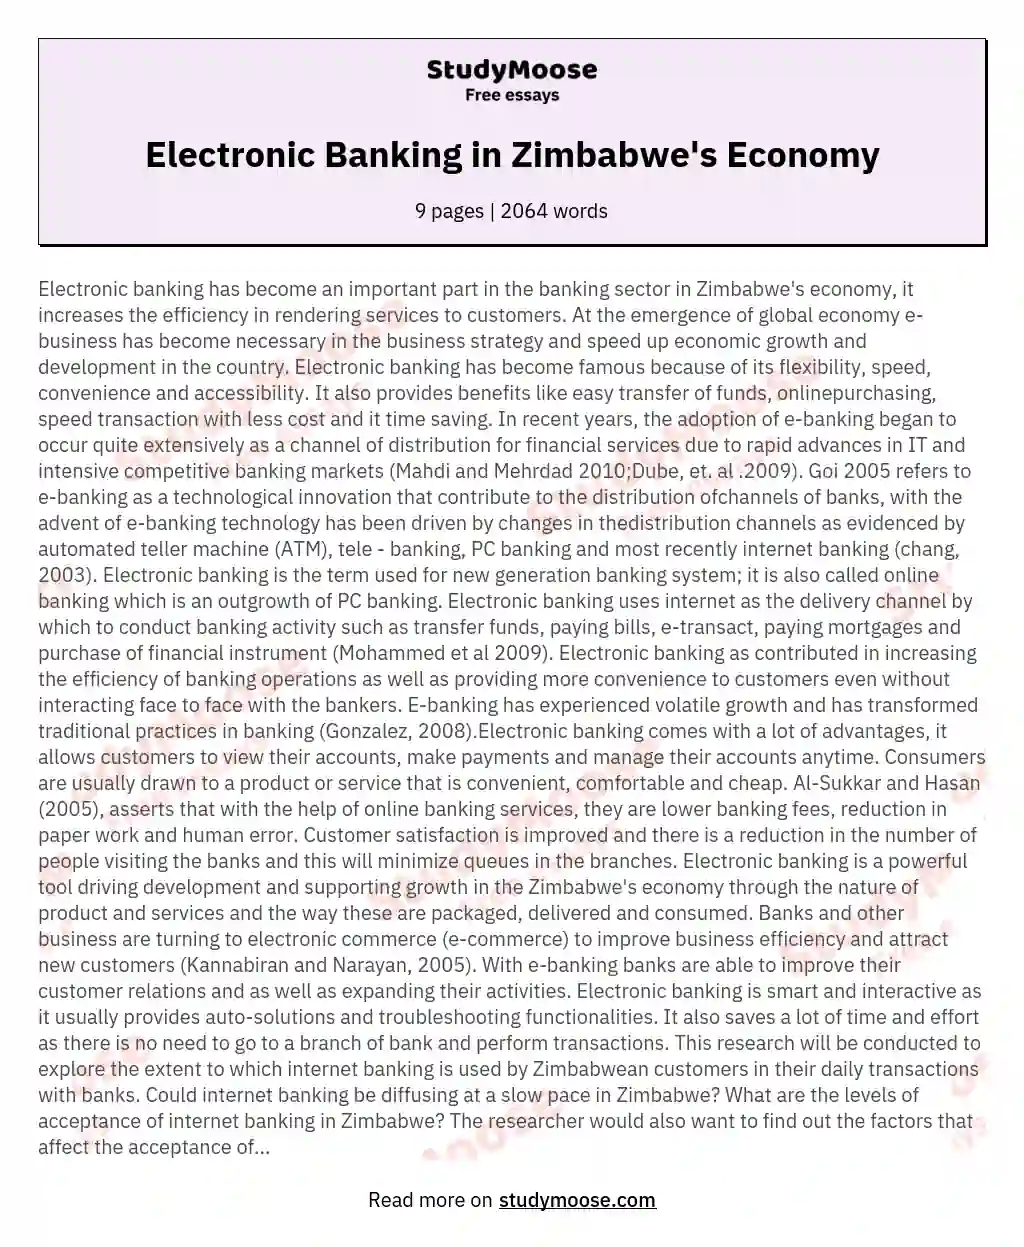 Electronic Banking in Zimbabwe's Economy